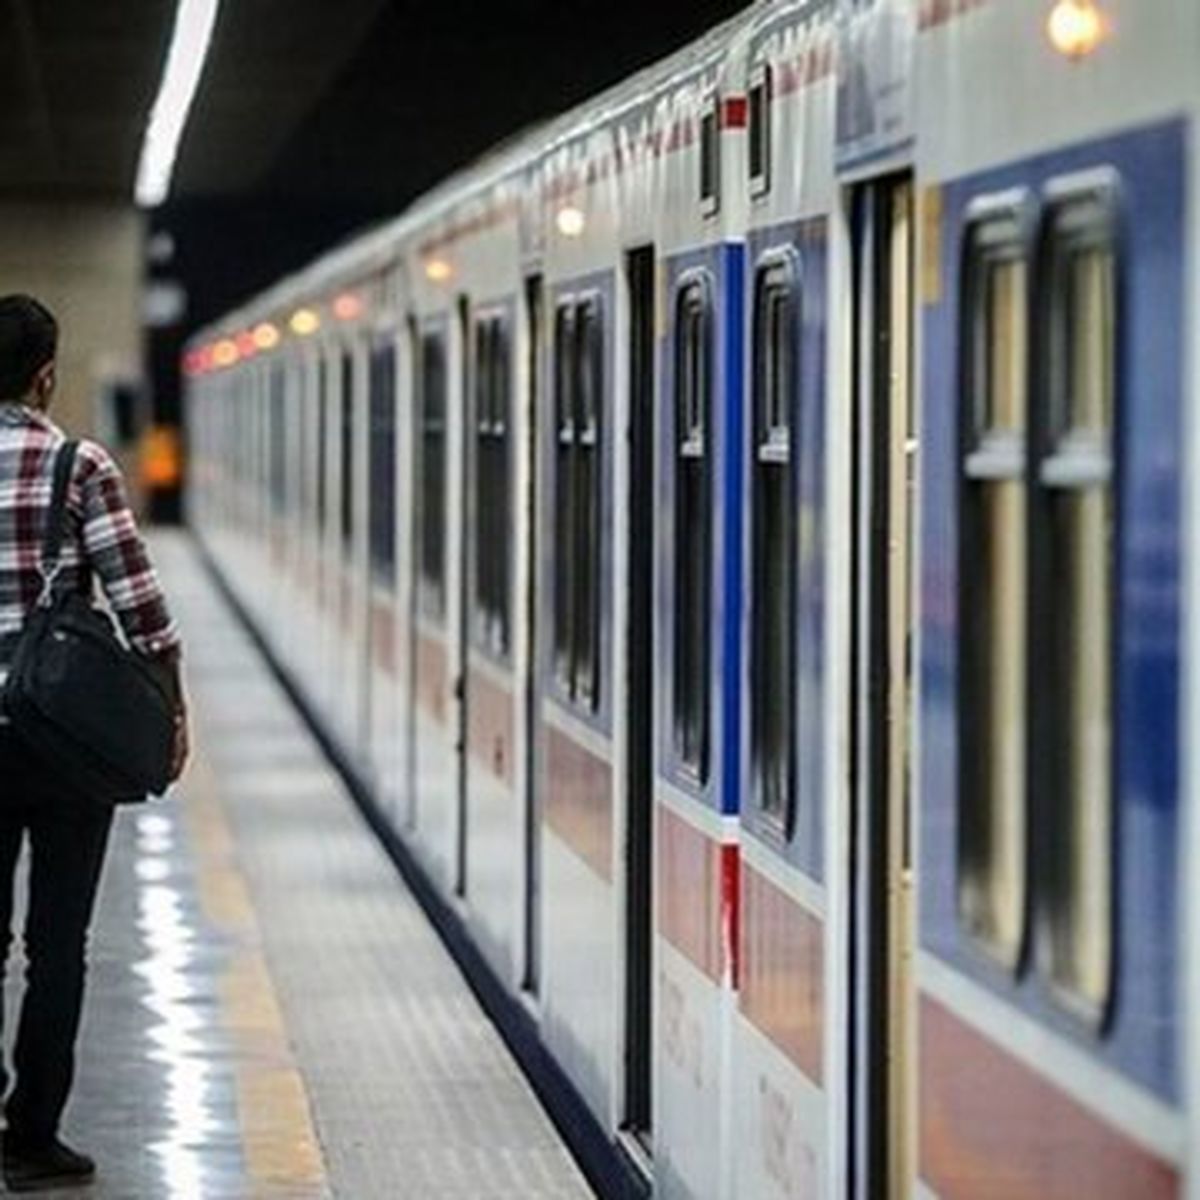 خودکشی این پسر جوان 20 ساله در ایستگاه مترو سرسبز